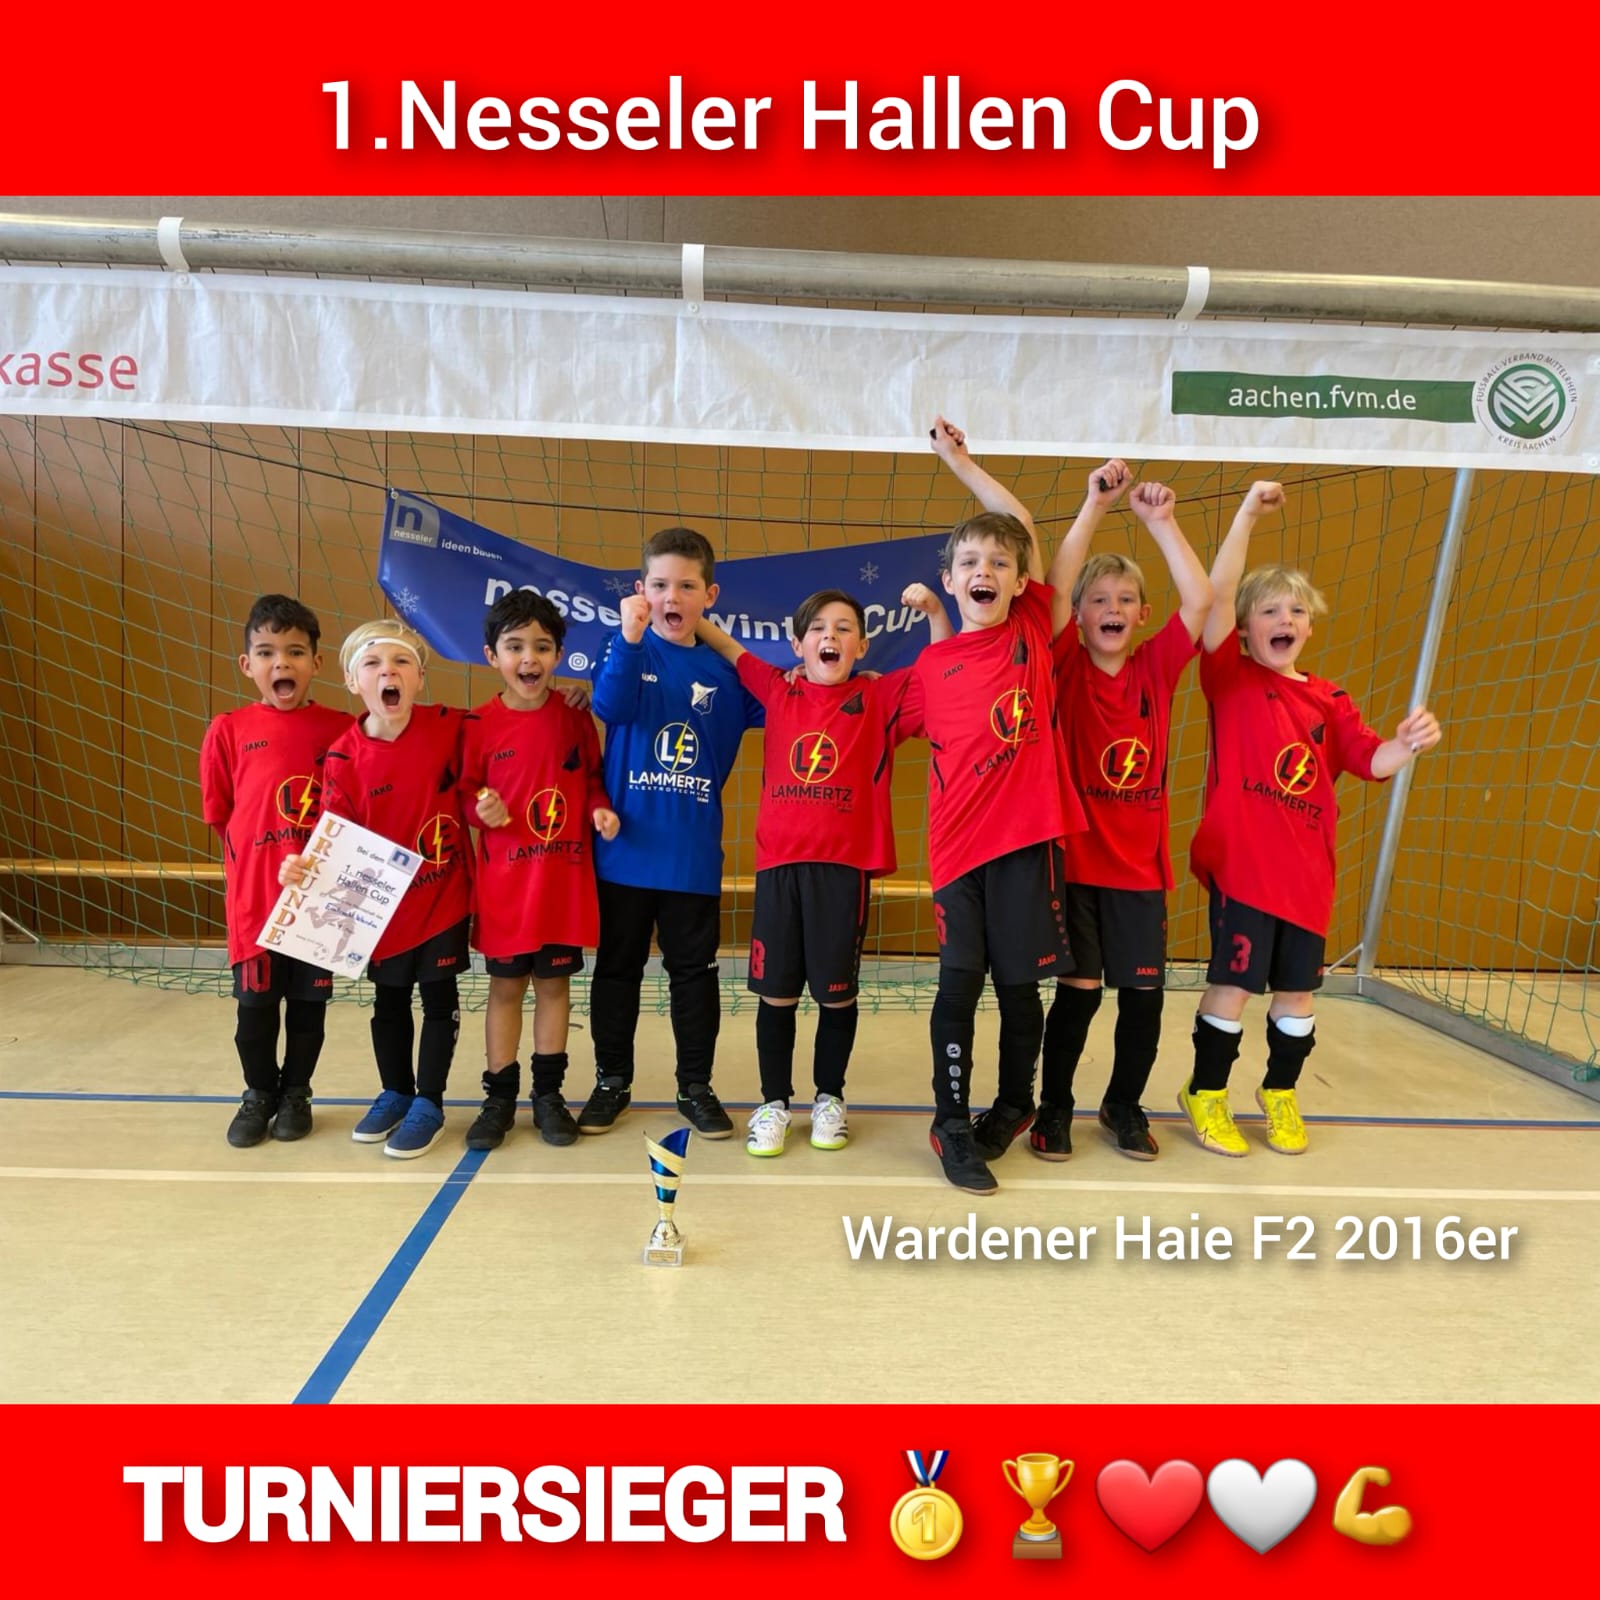 Ungeschlagen – Wardener Haie F2 – Turniersieger beim 1.Nesseler Hallen Cup